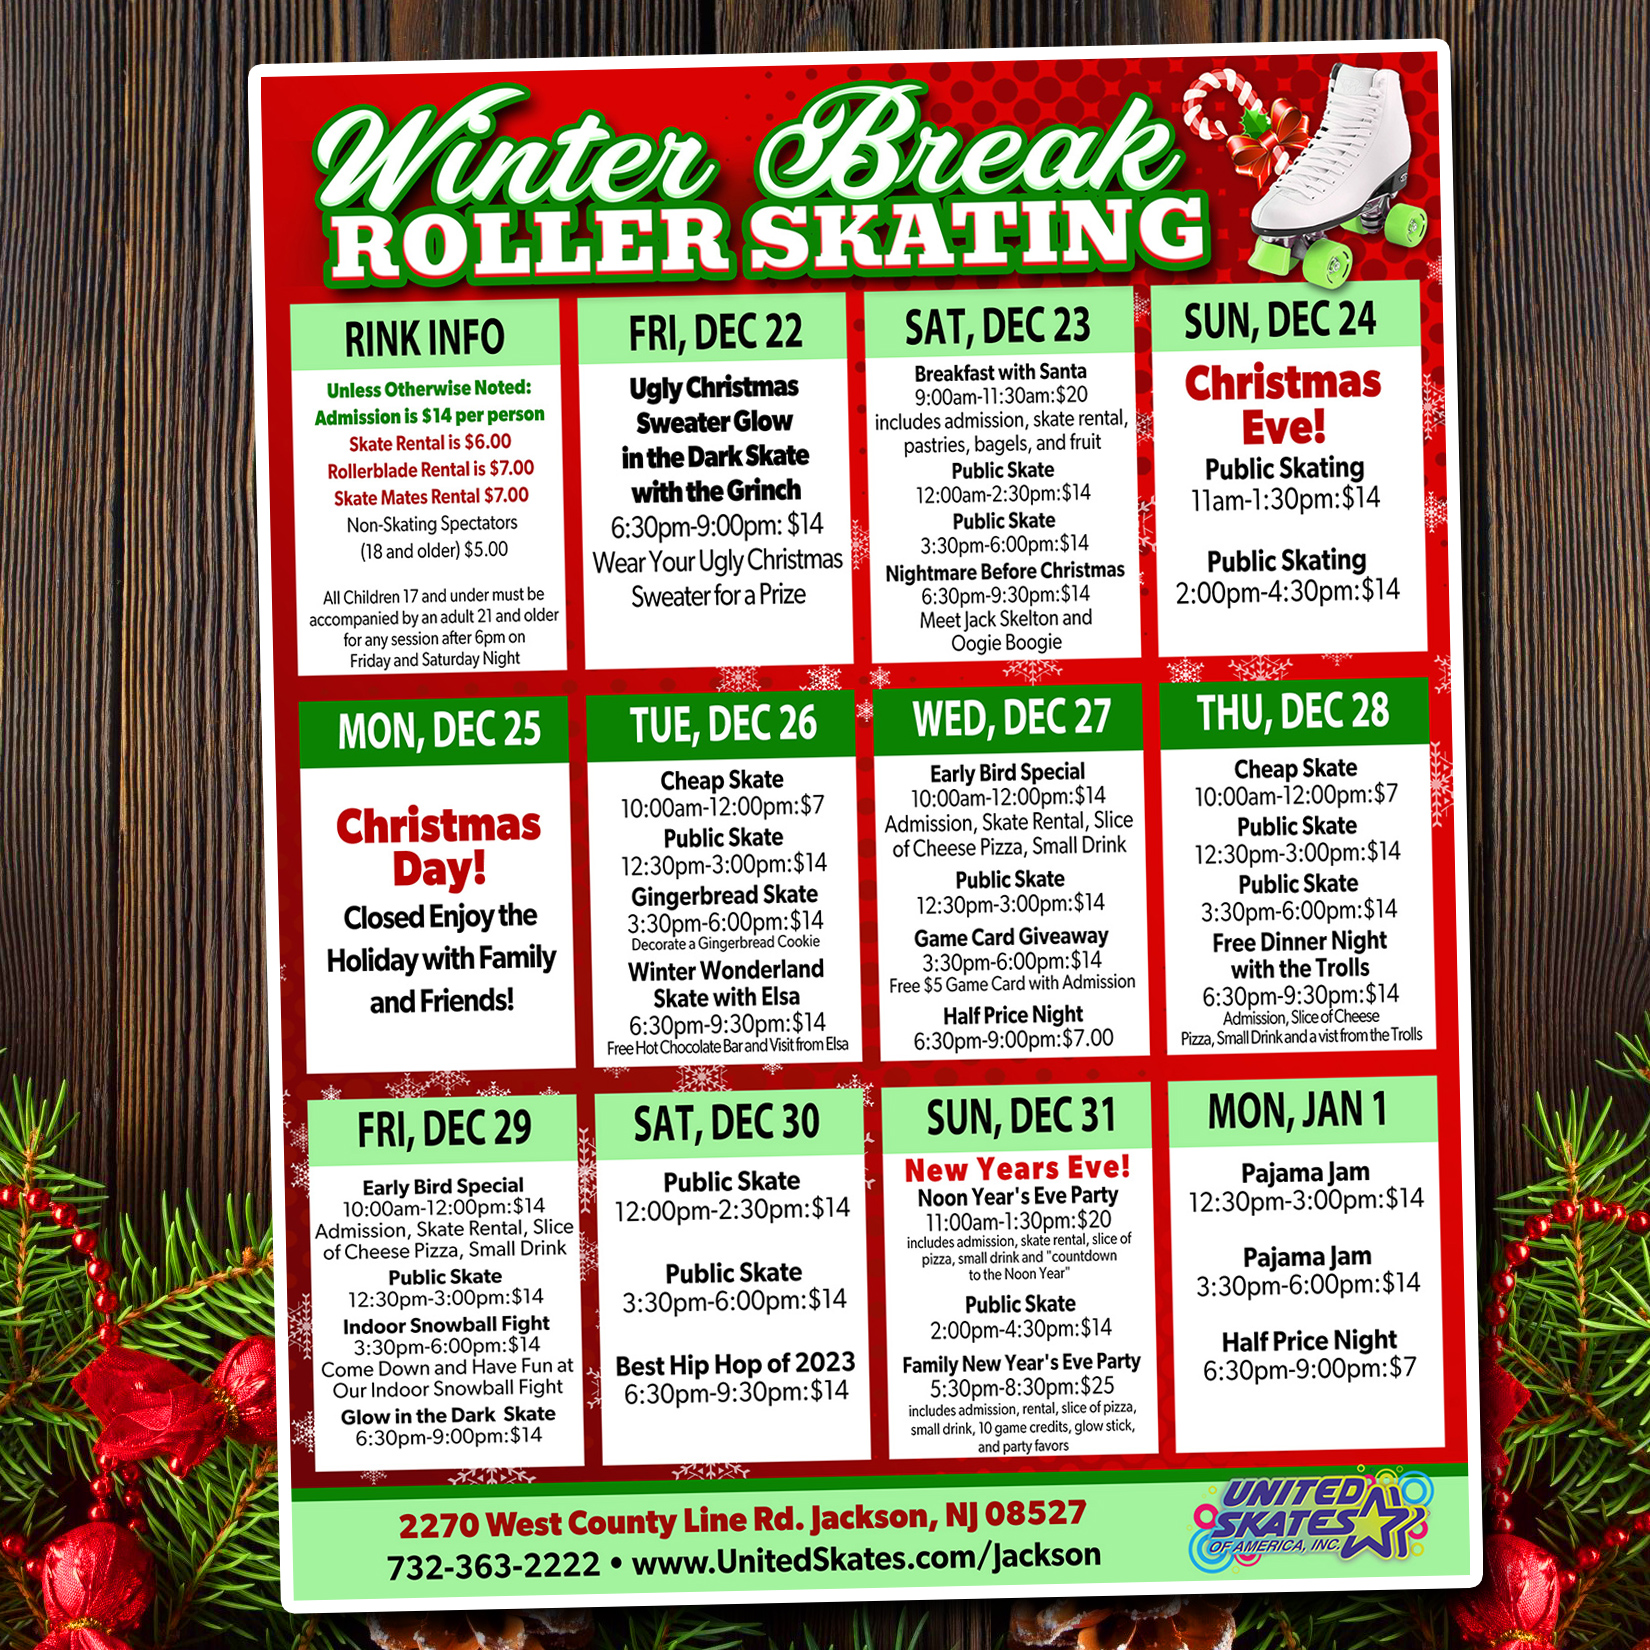 United Skates Jackson Winter Break Calendar